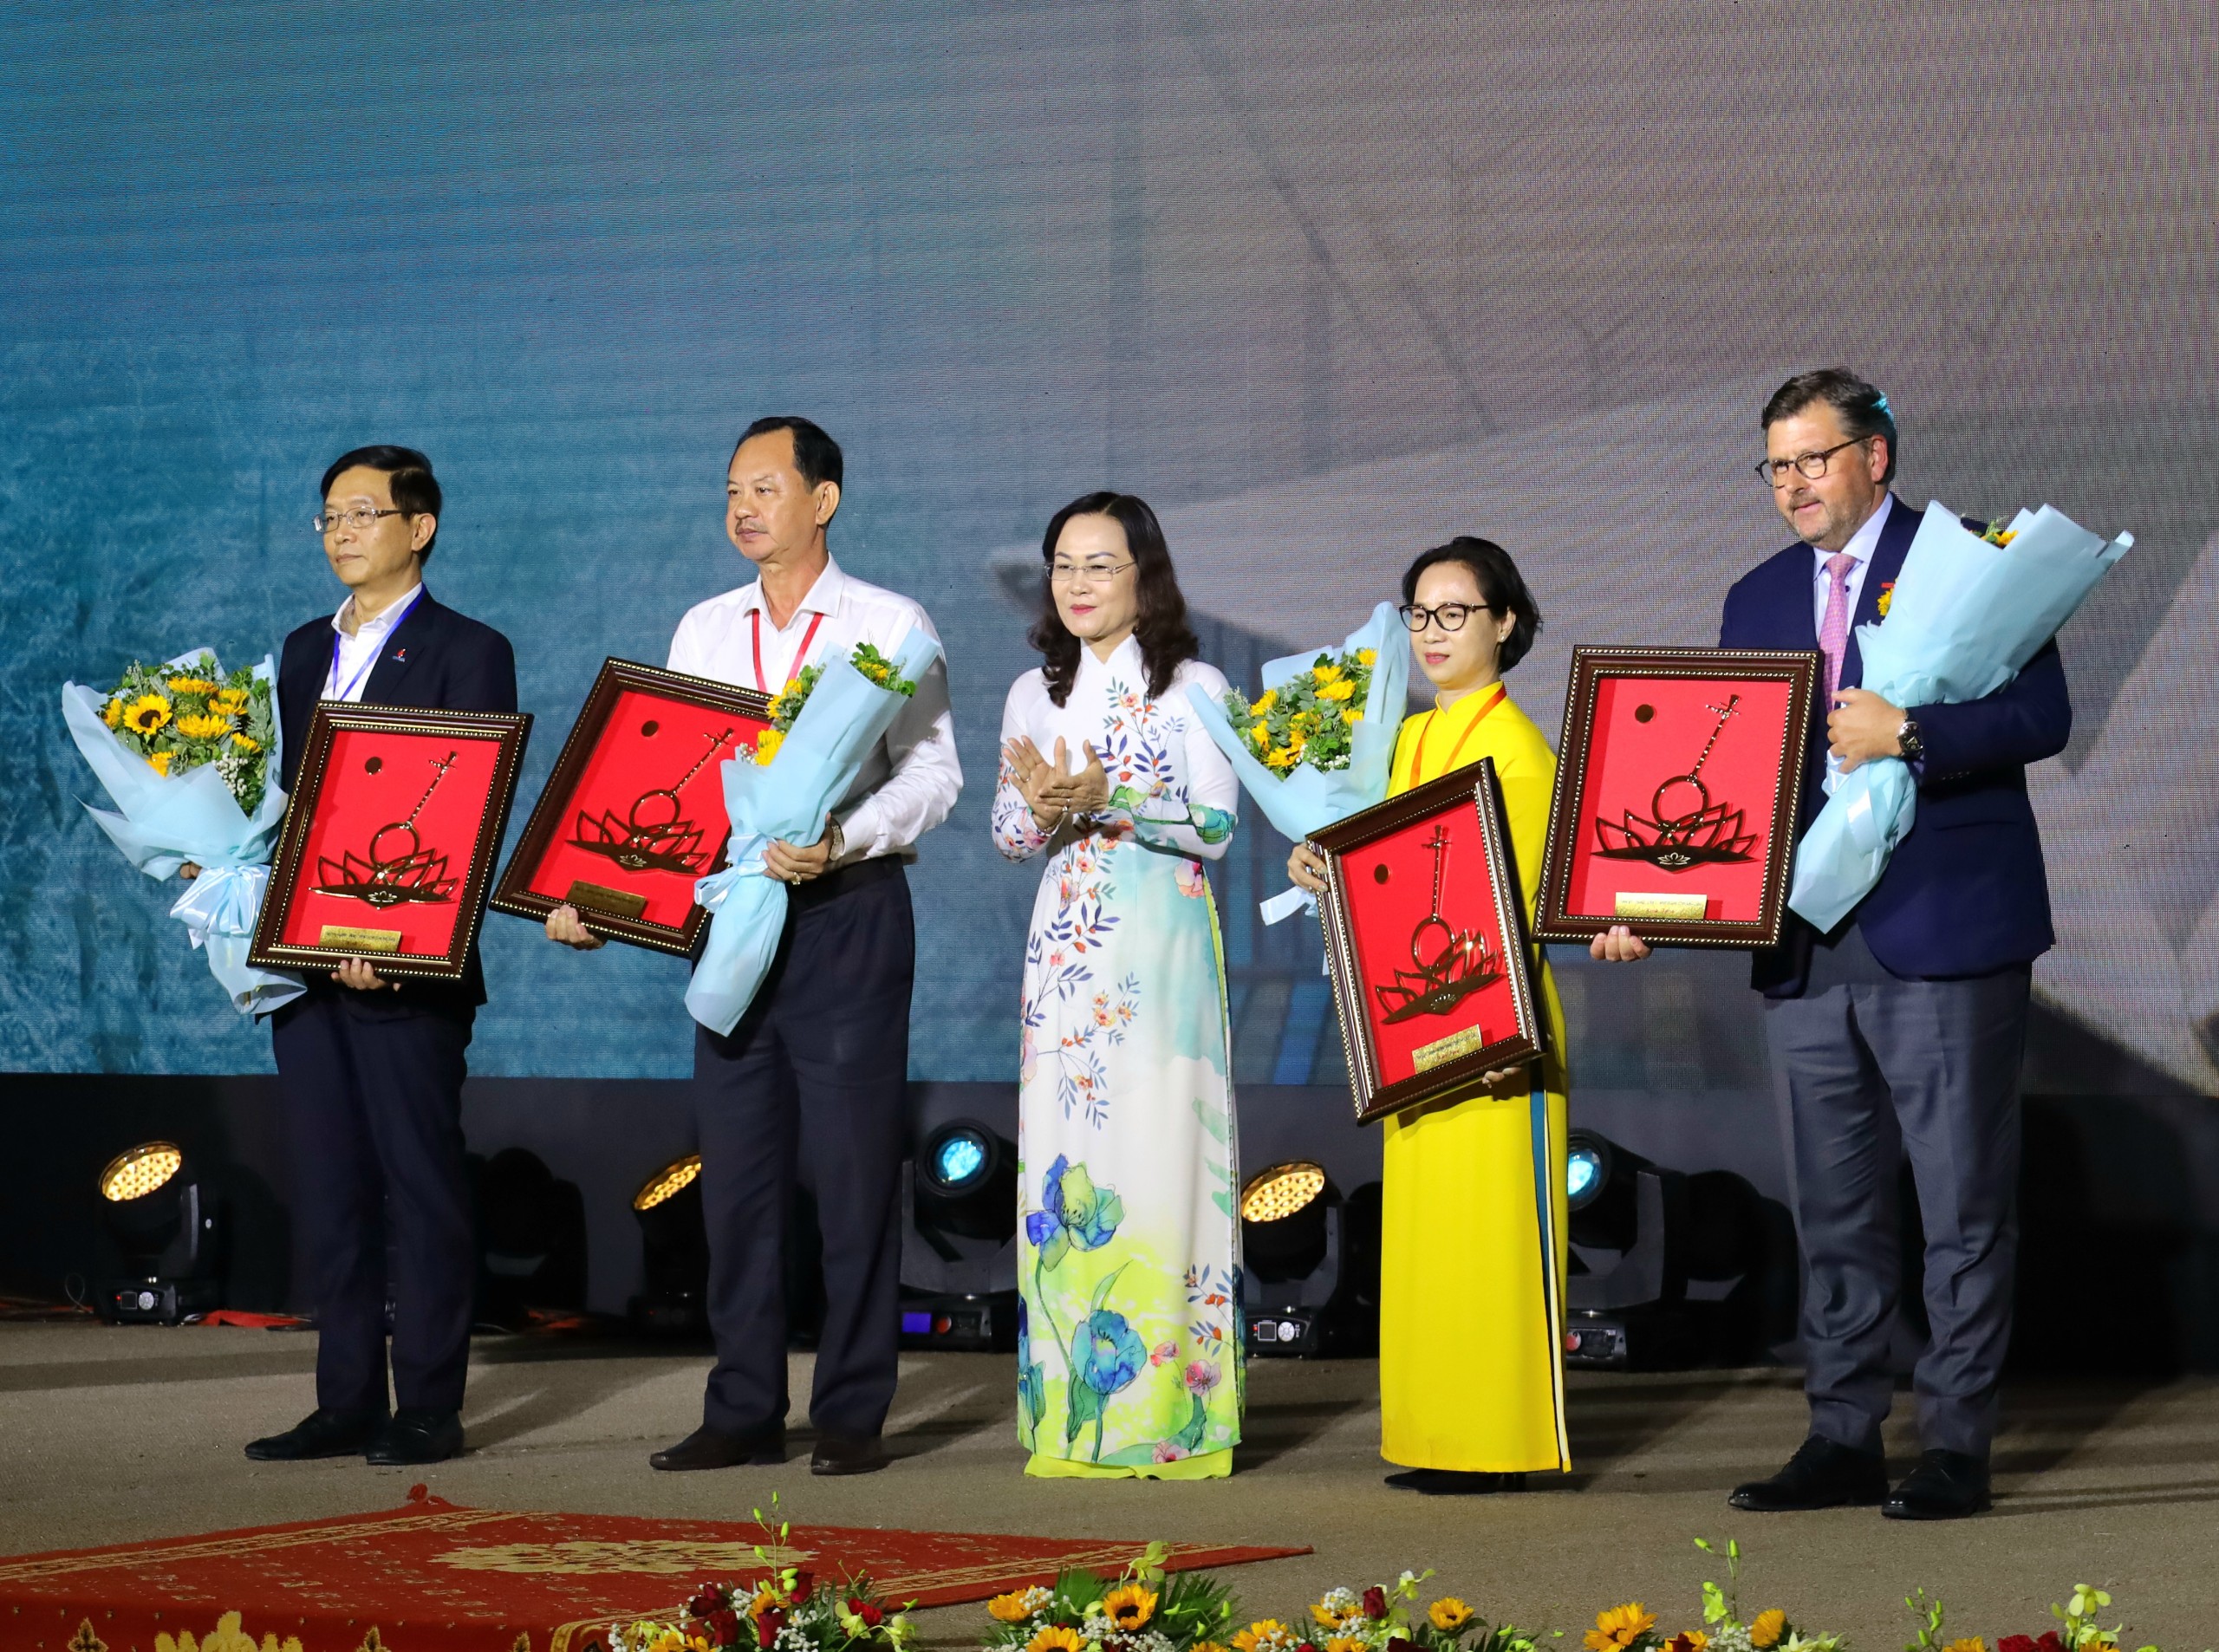 Bà Lê Thị Ái Nam - Phó Bí thư thường trực Tỉnh ủy Bạc Liêu tặng hoa và quà cho các doanh nghiệp đã đóng góp và thực hiện các hoạt động an sinh xã hội tại tỉnh Bạc Liêu.